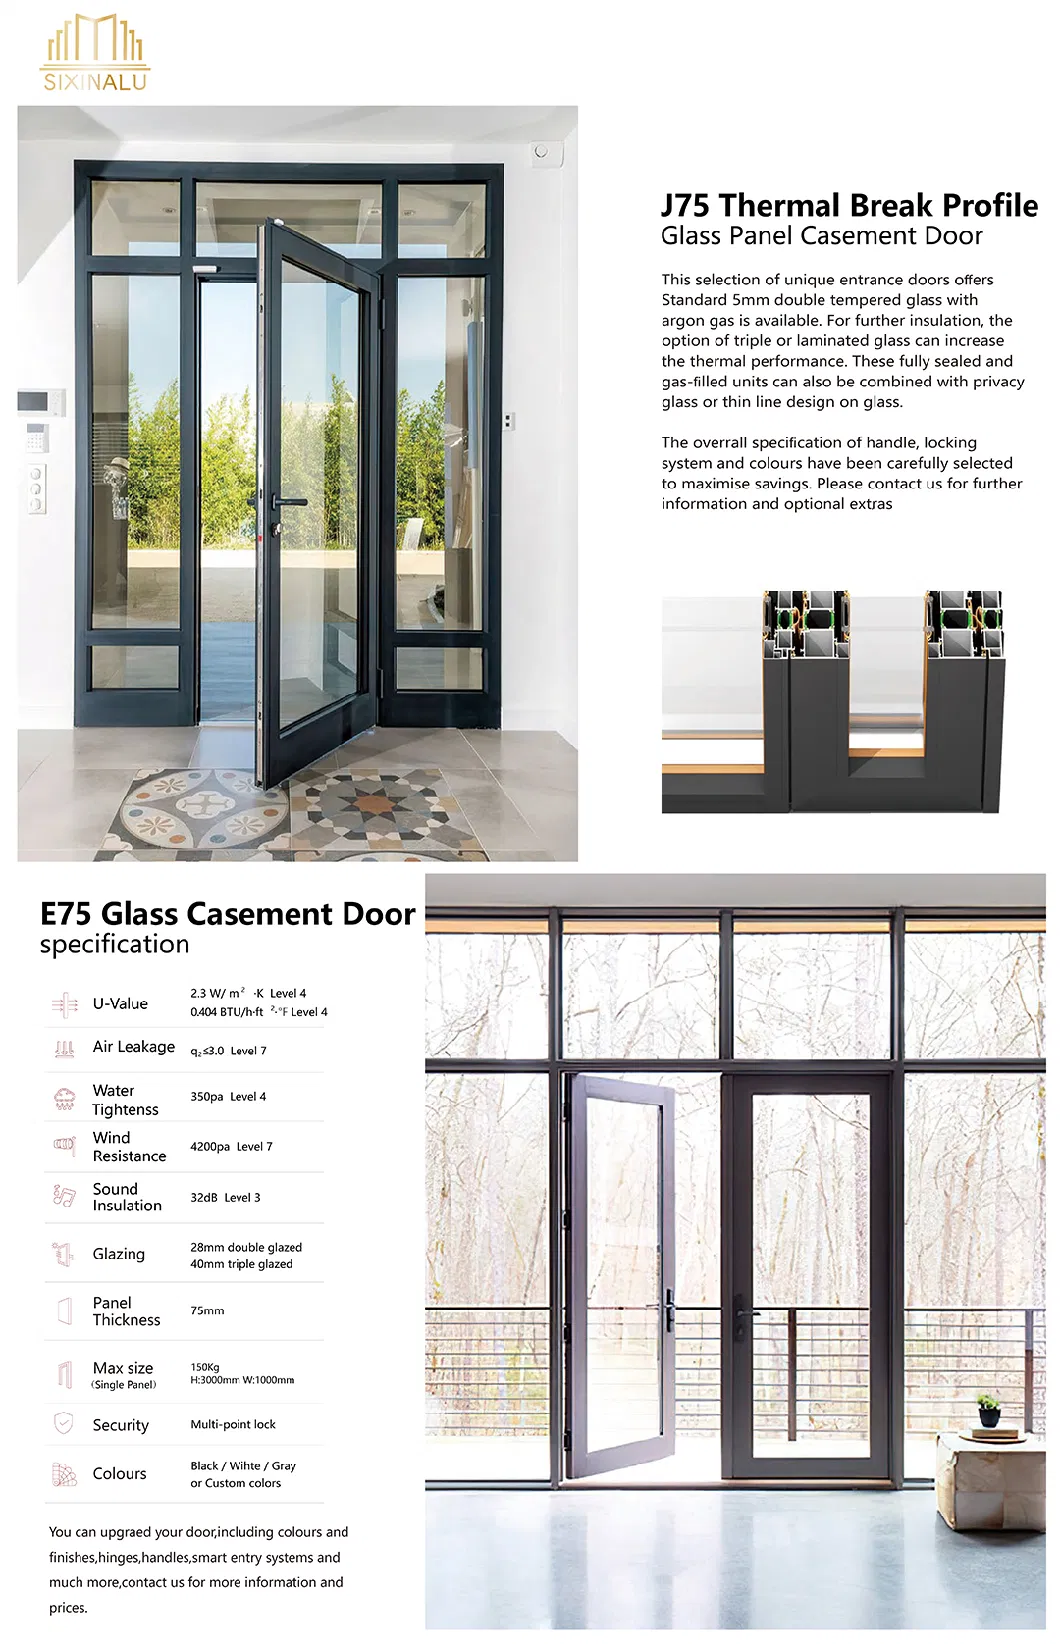 Sixinalu Security Steel Door Modern Exterior Aluminum Profile Entrance Front Gate Design Waterproof Aluminum Alloy Casement Door